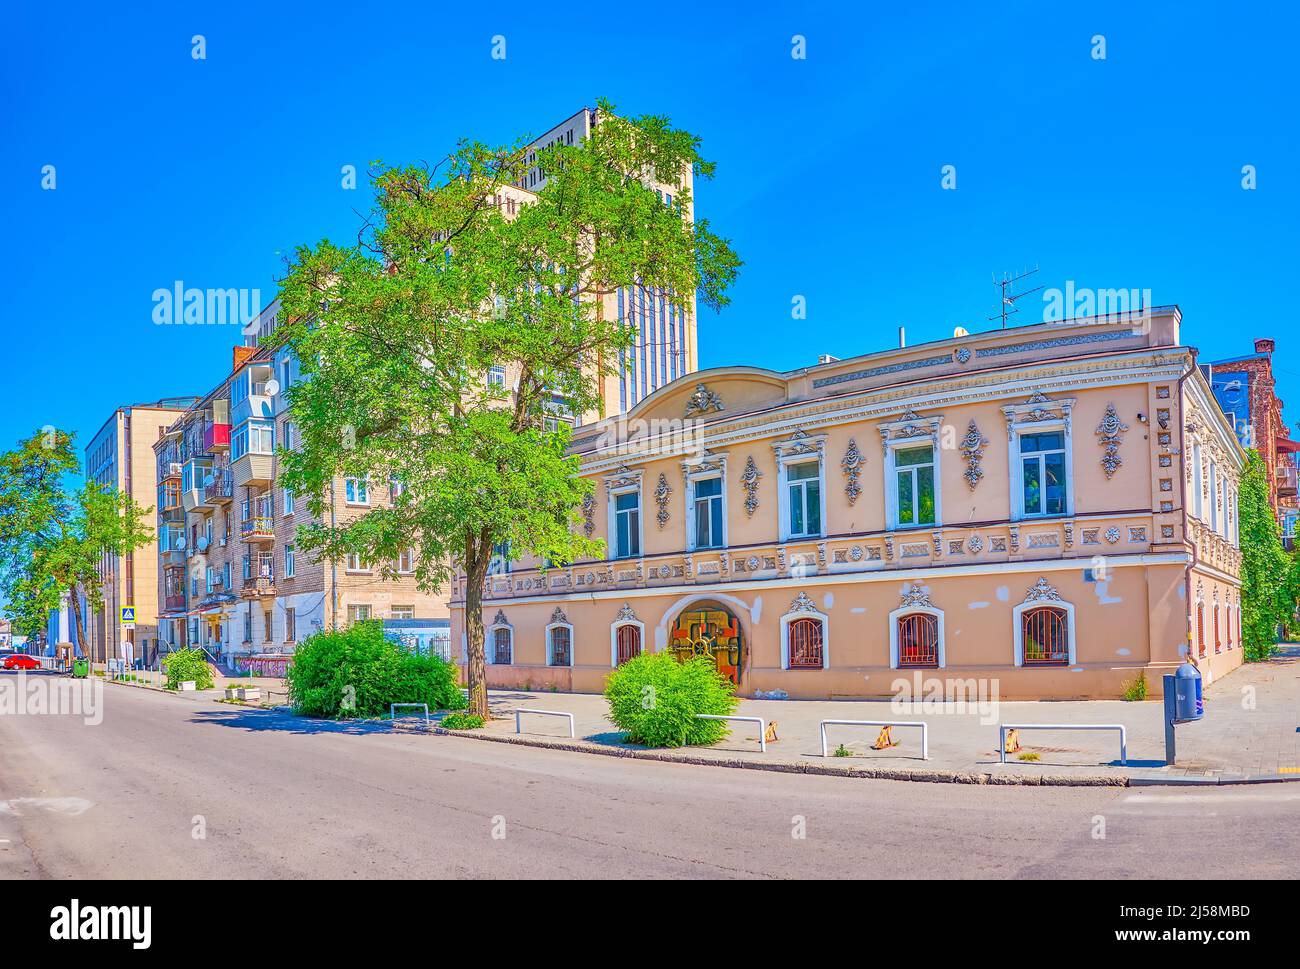 La scena urbana del quartiere storico della città di Dnipro con vecchio piccolo edificio con facciata panoramica, Ucraina Foto Stock